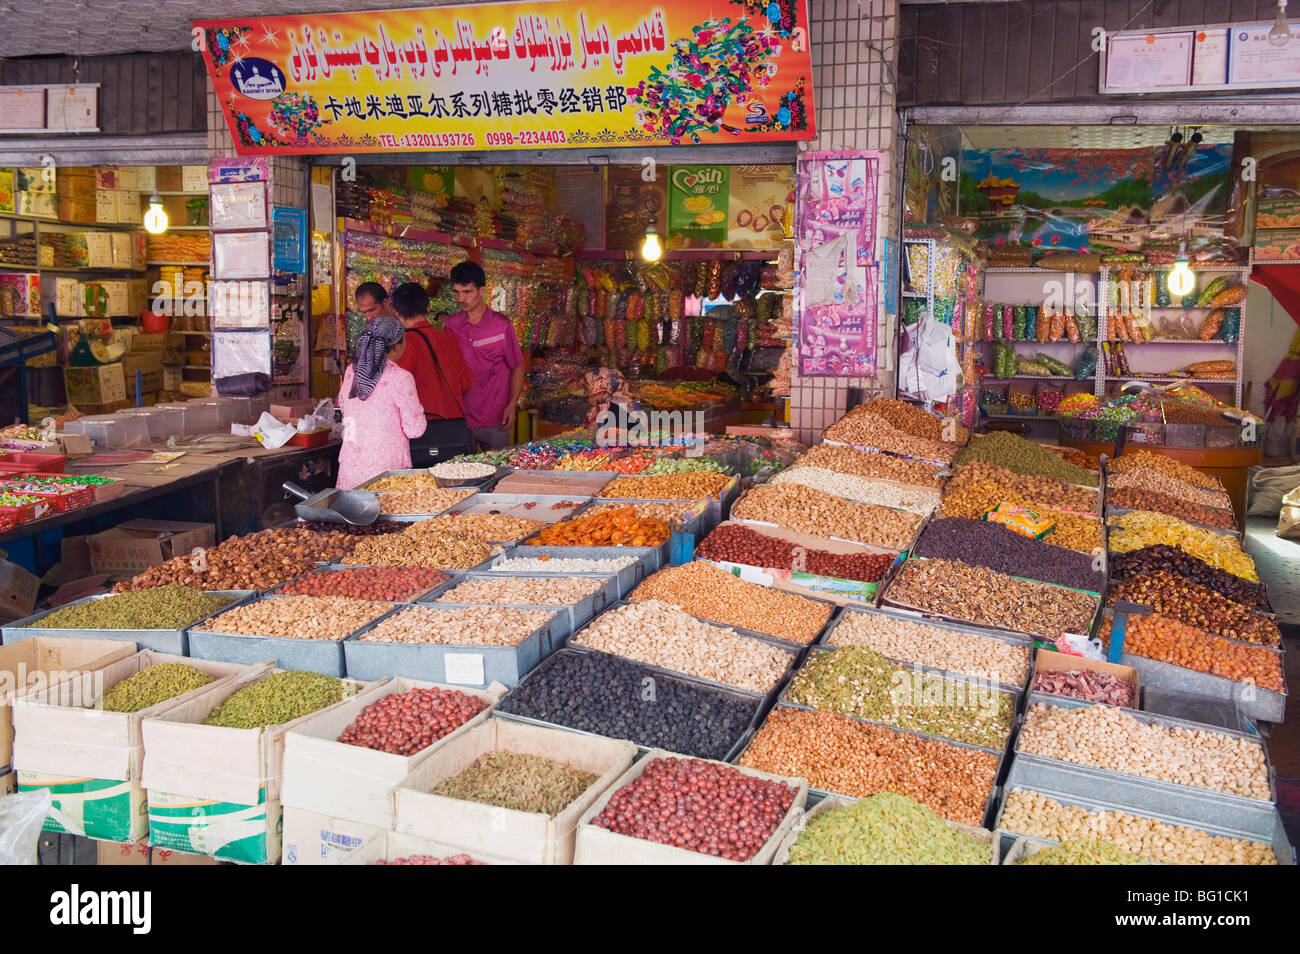 Frutta secca vengano venduti al mercato di domenica, Kashgar (Kashi) Città, provincia di Xinjiang, Cina e Asia Foto Stock